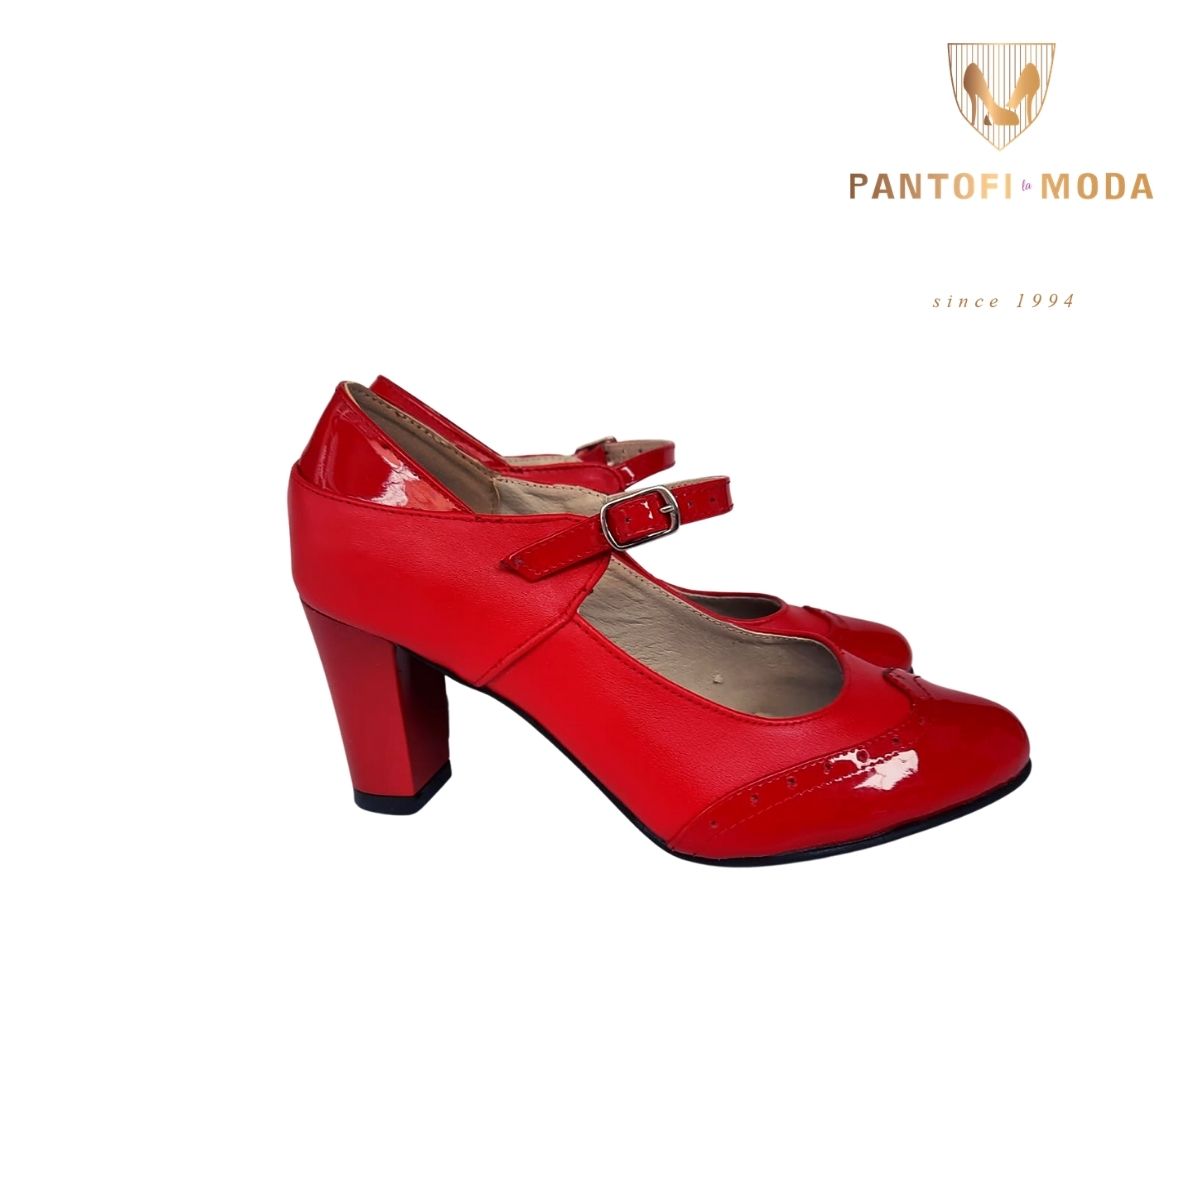 Pantofi roșii din piele naturală – P100 pantofi.moda/ imagine 2022